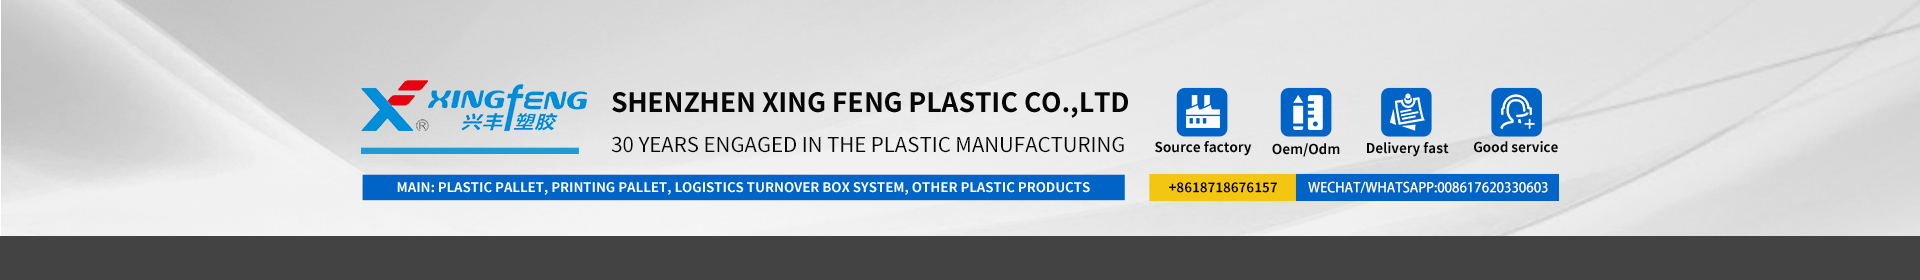 xingfeng پلاسٹک کمپنی 30 سالوں سے پلاسٹک کی مصنوعات میں پیشہ ور ہے۔